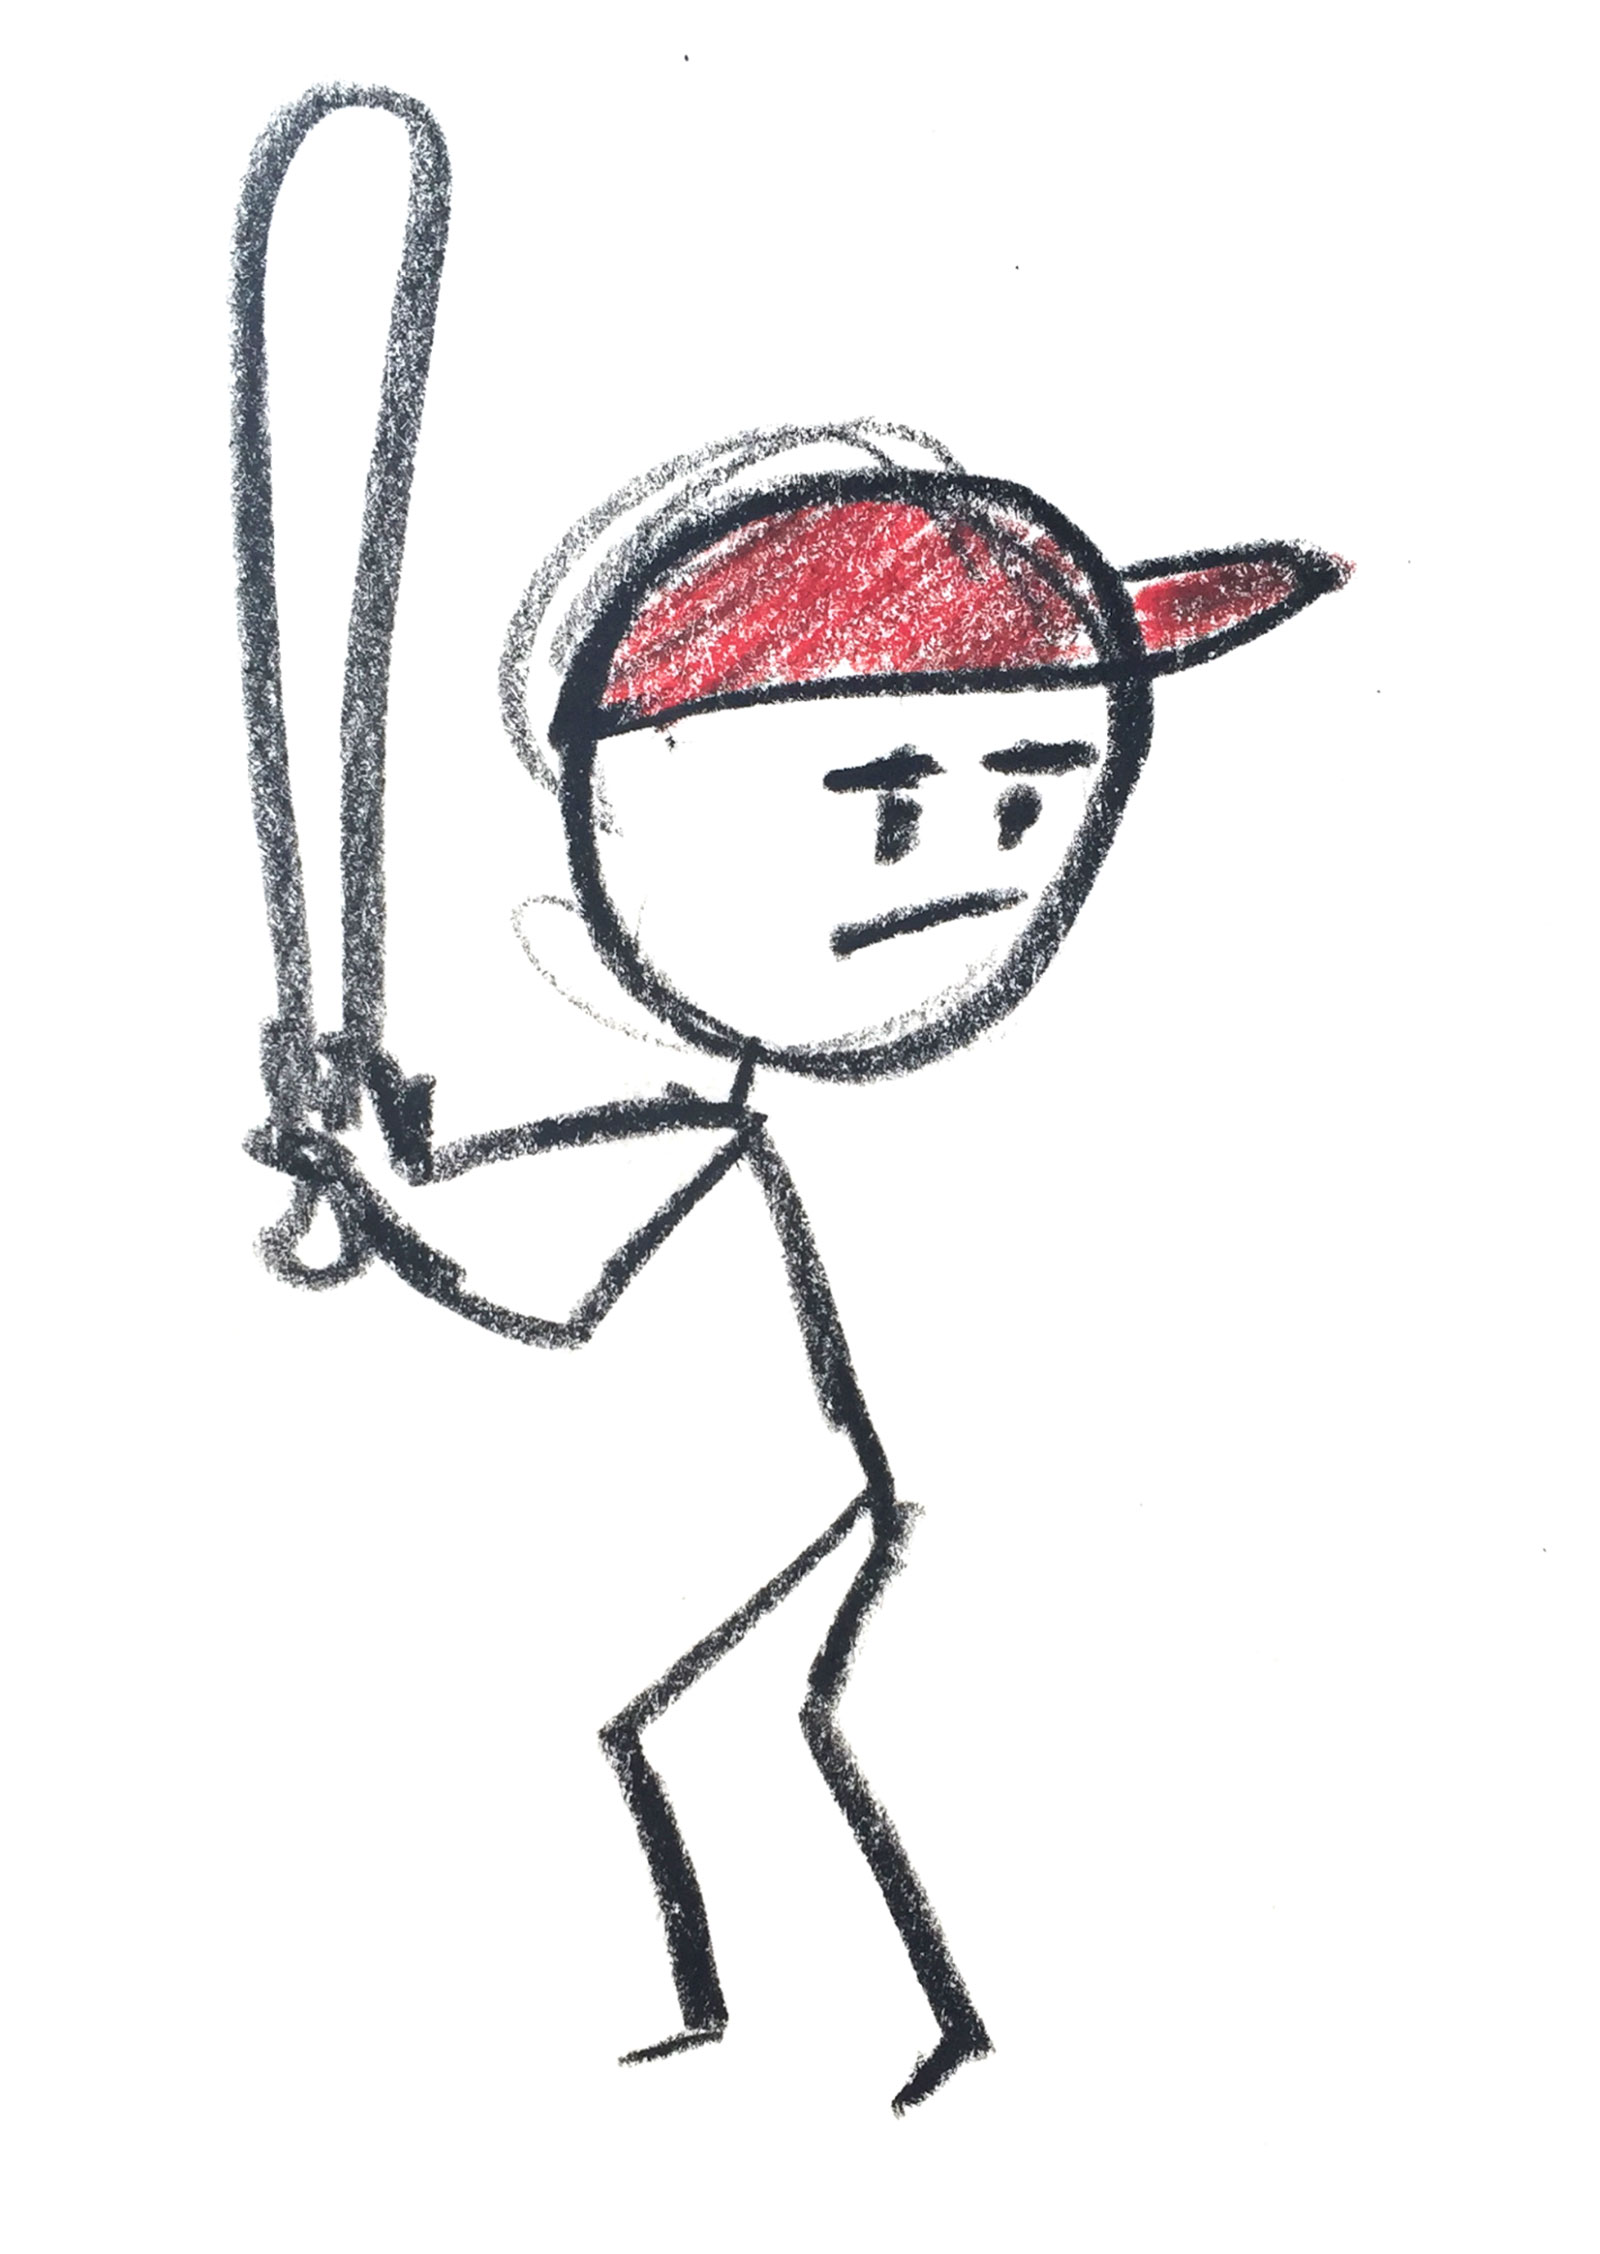 Stick figure with a baseball bat.